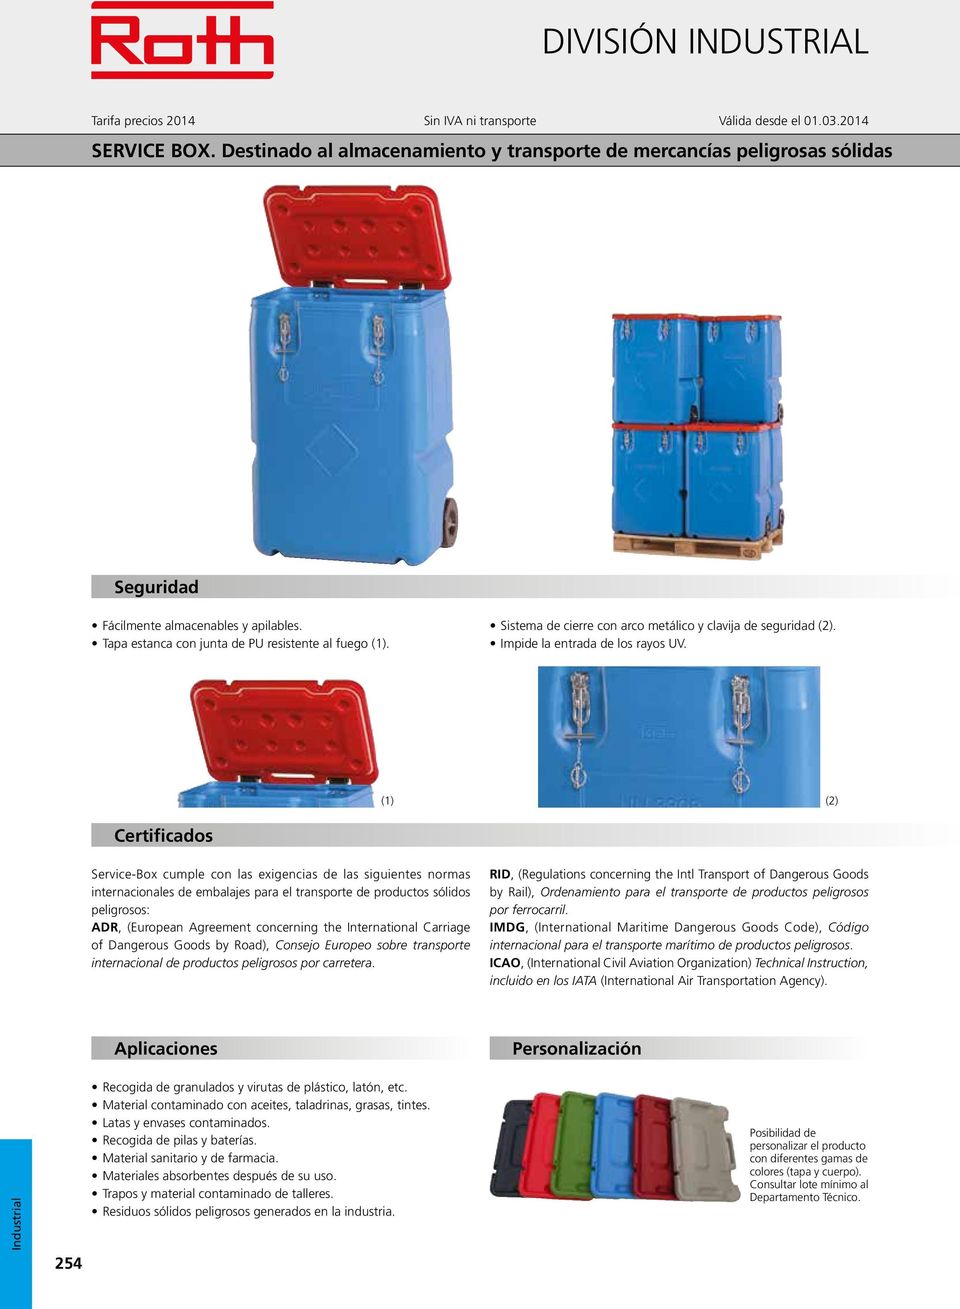 (1) (2) Certificados Service-Box cumple con las exigencias de las siguientes normas internacionales de embalajes para el transporte de productos sólidos peligrosos: ADR, (European Agreement